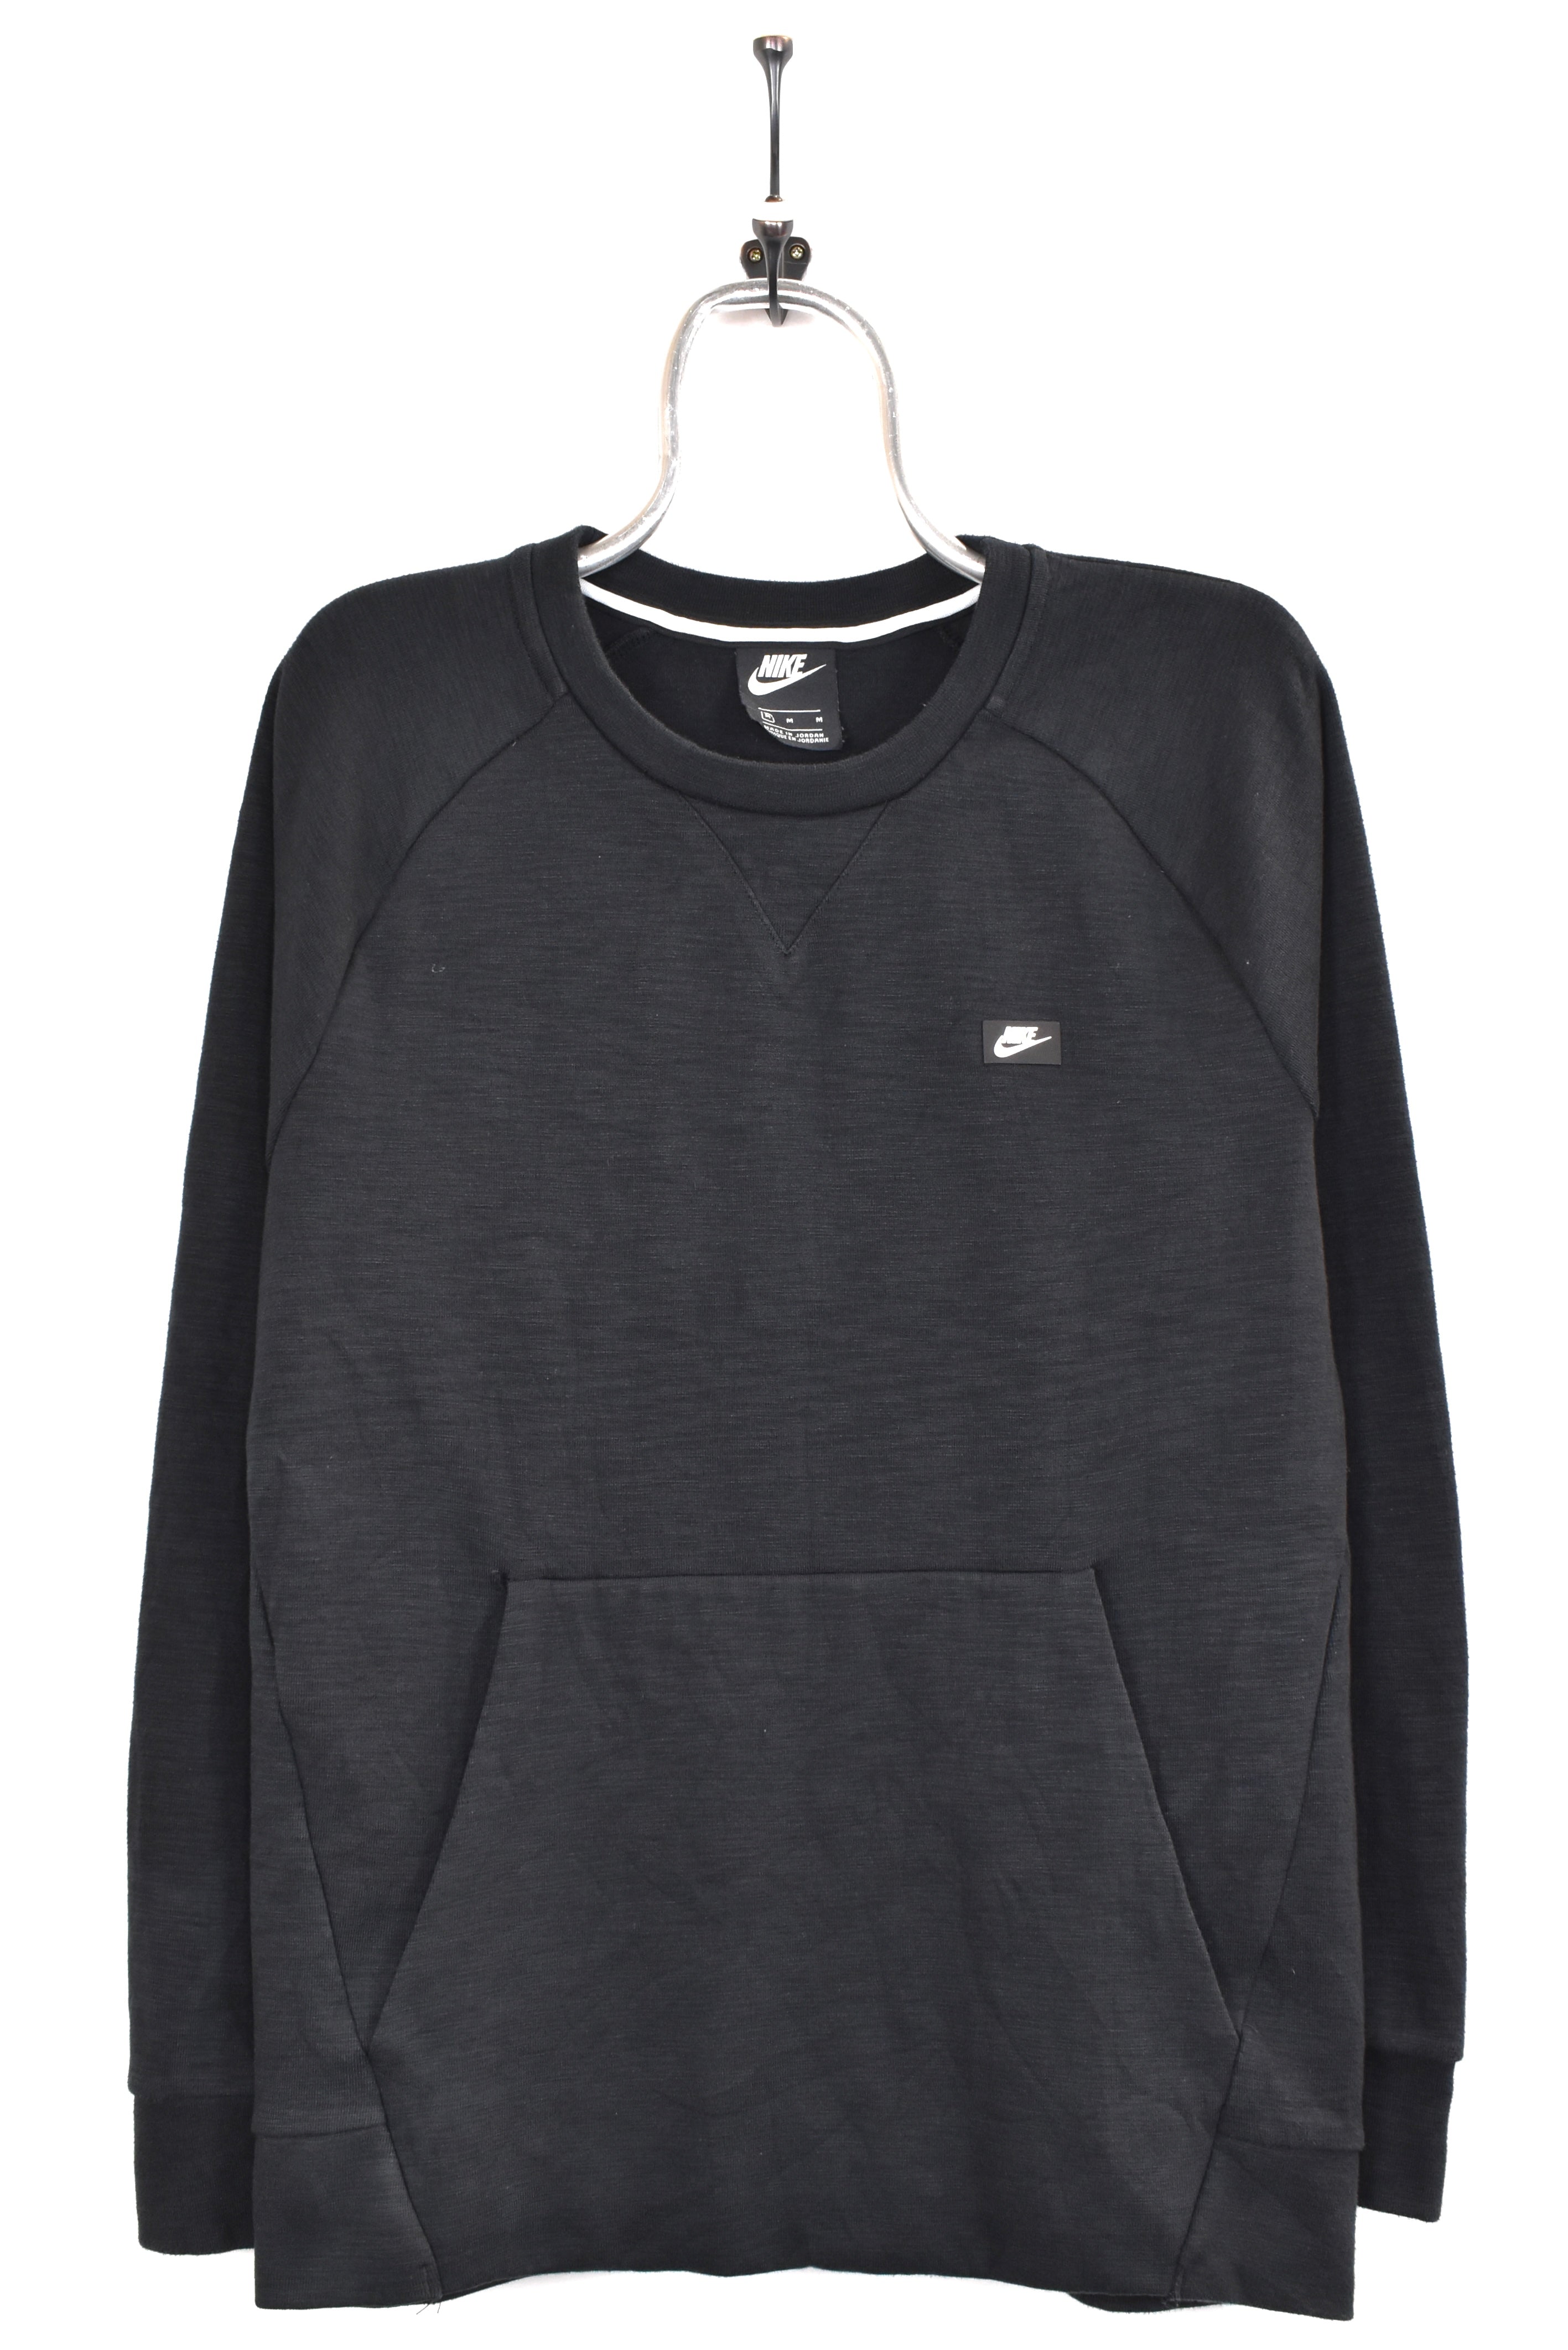 Vintage Nike sweatshirt, black basic crewneck - AU Medium NIKE